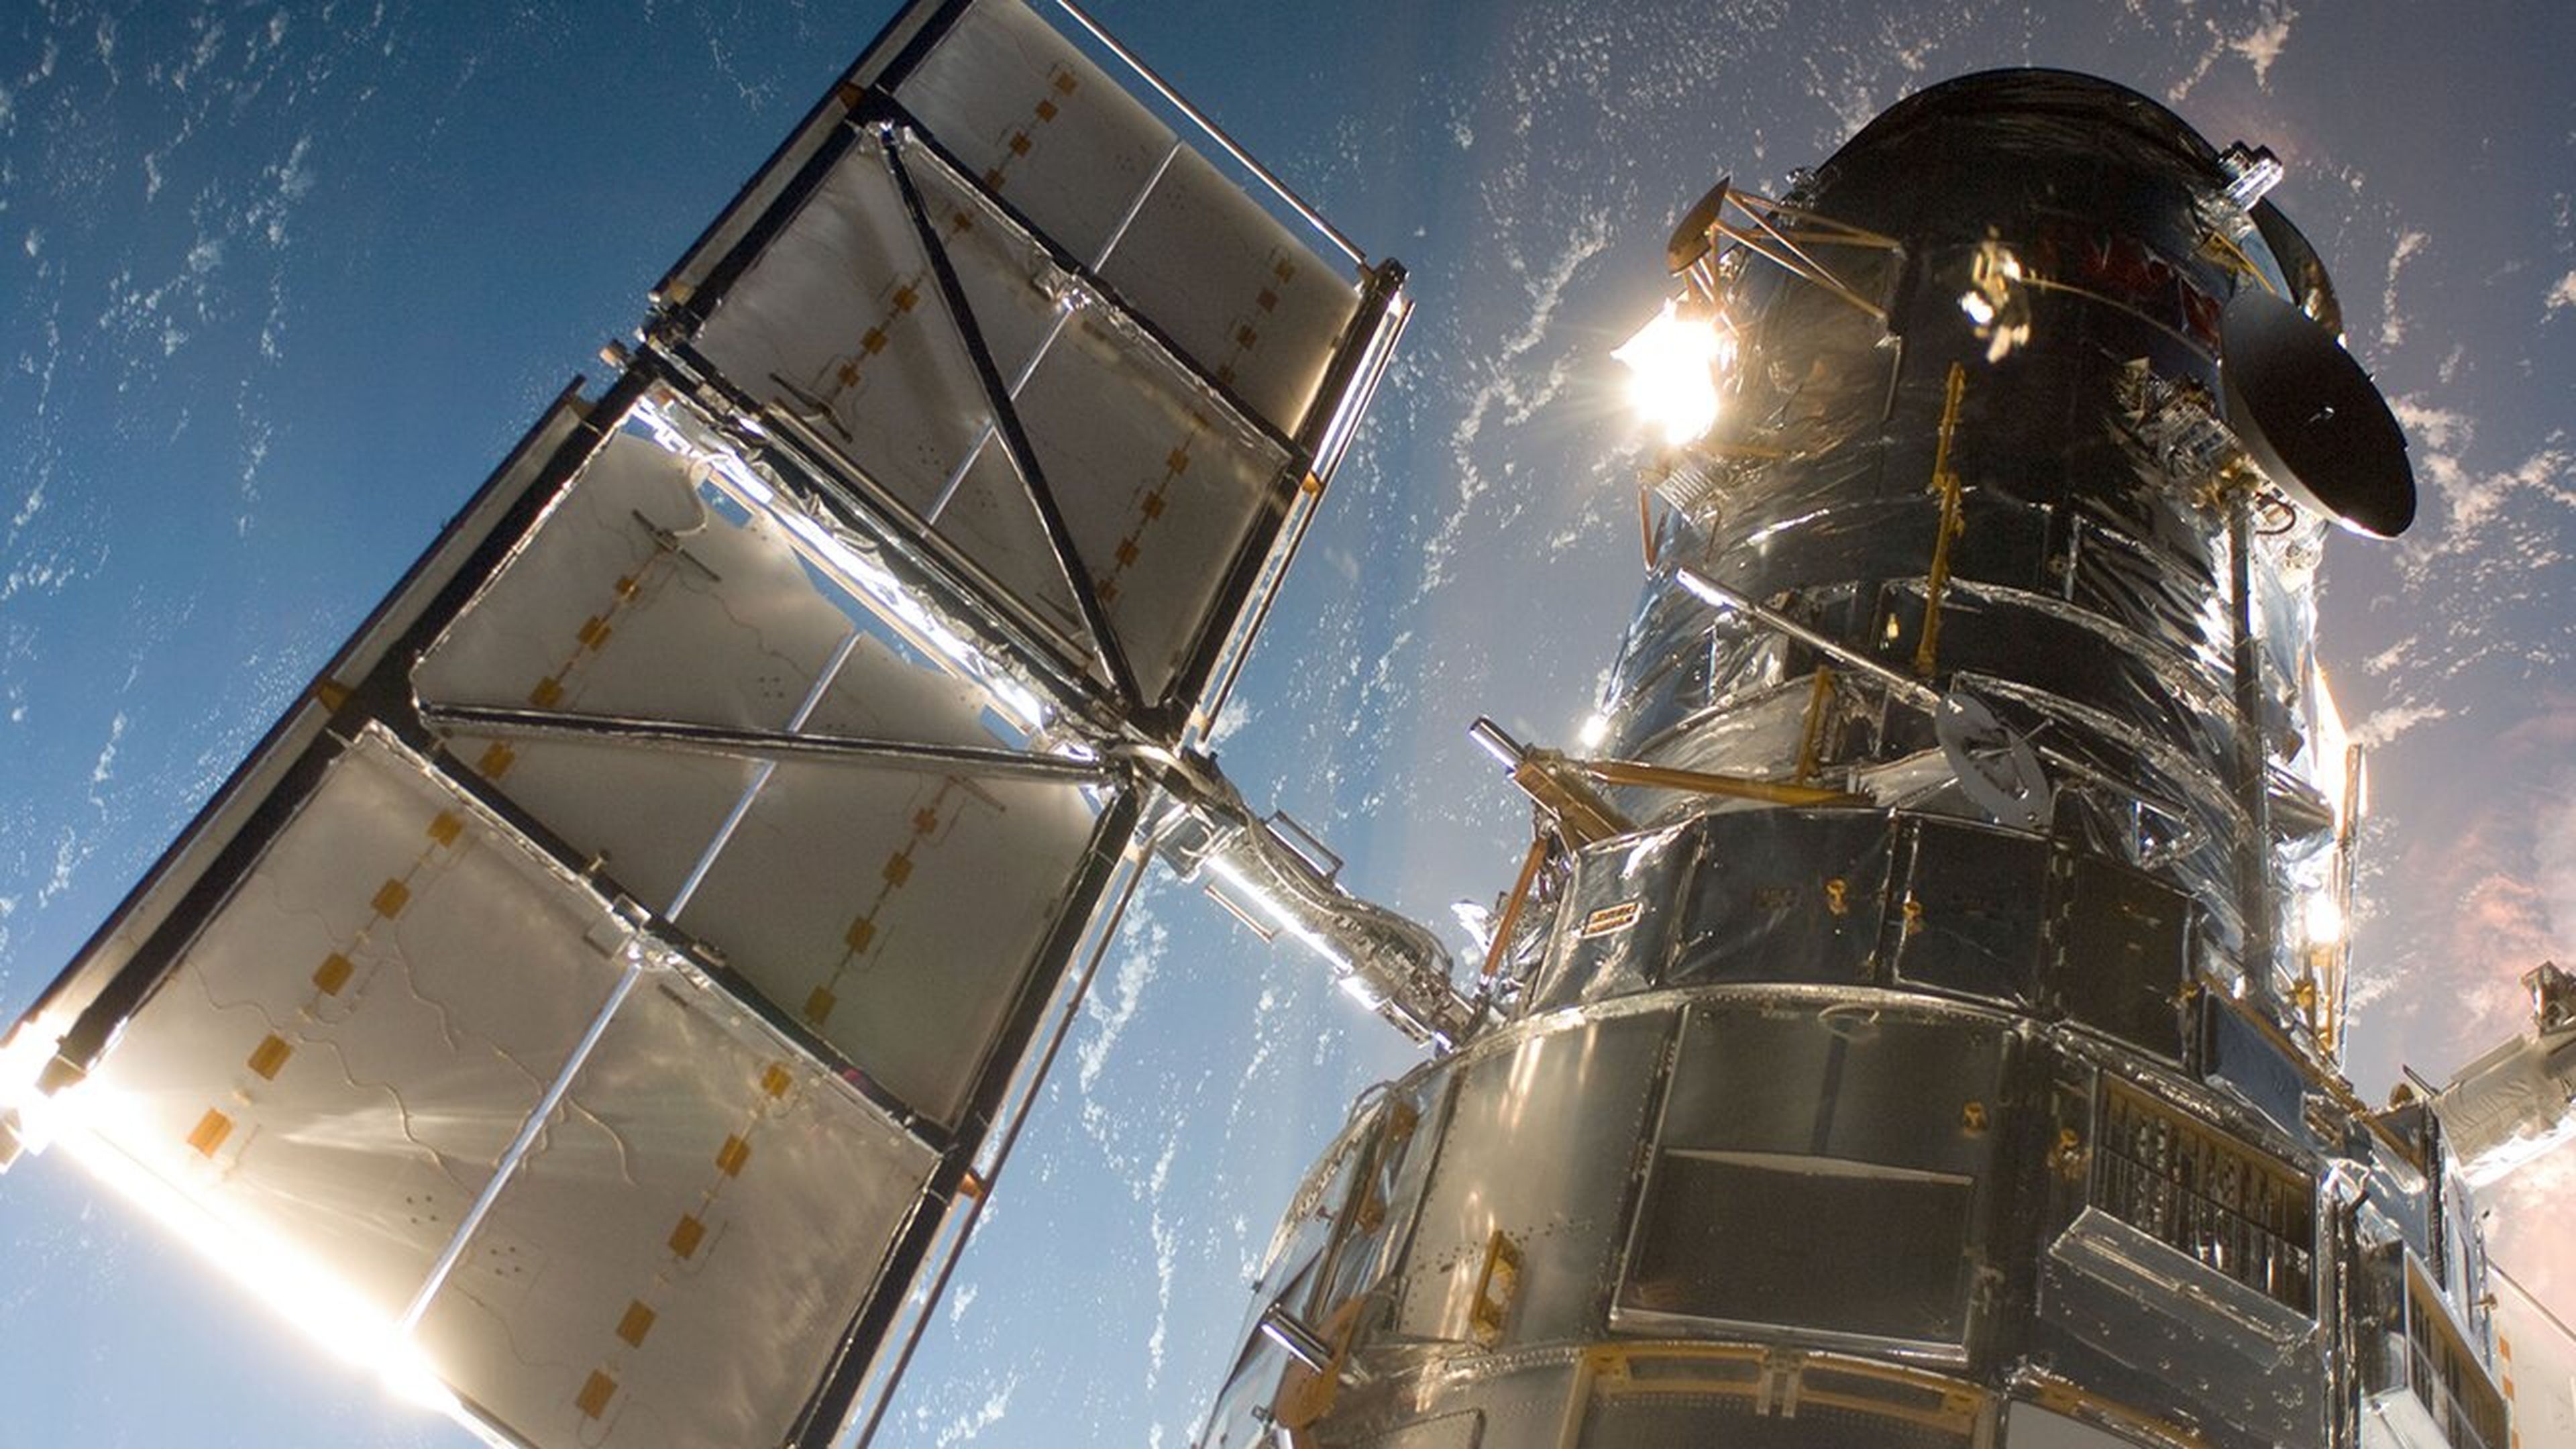 Ilustración del telescopio espacial Hubble de la NASA en órbita.